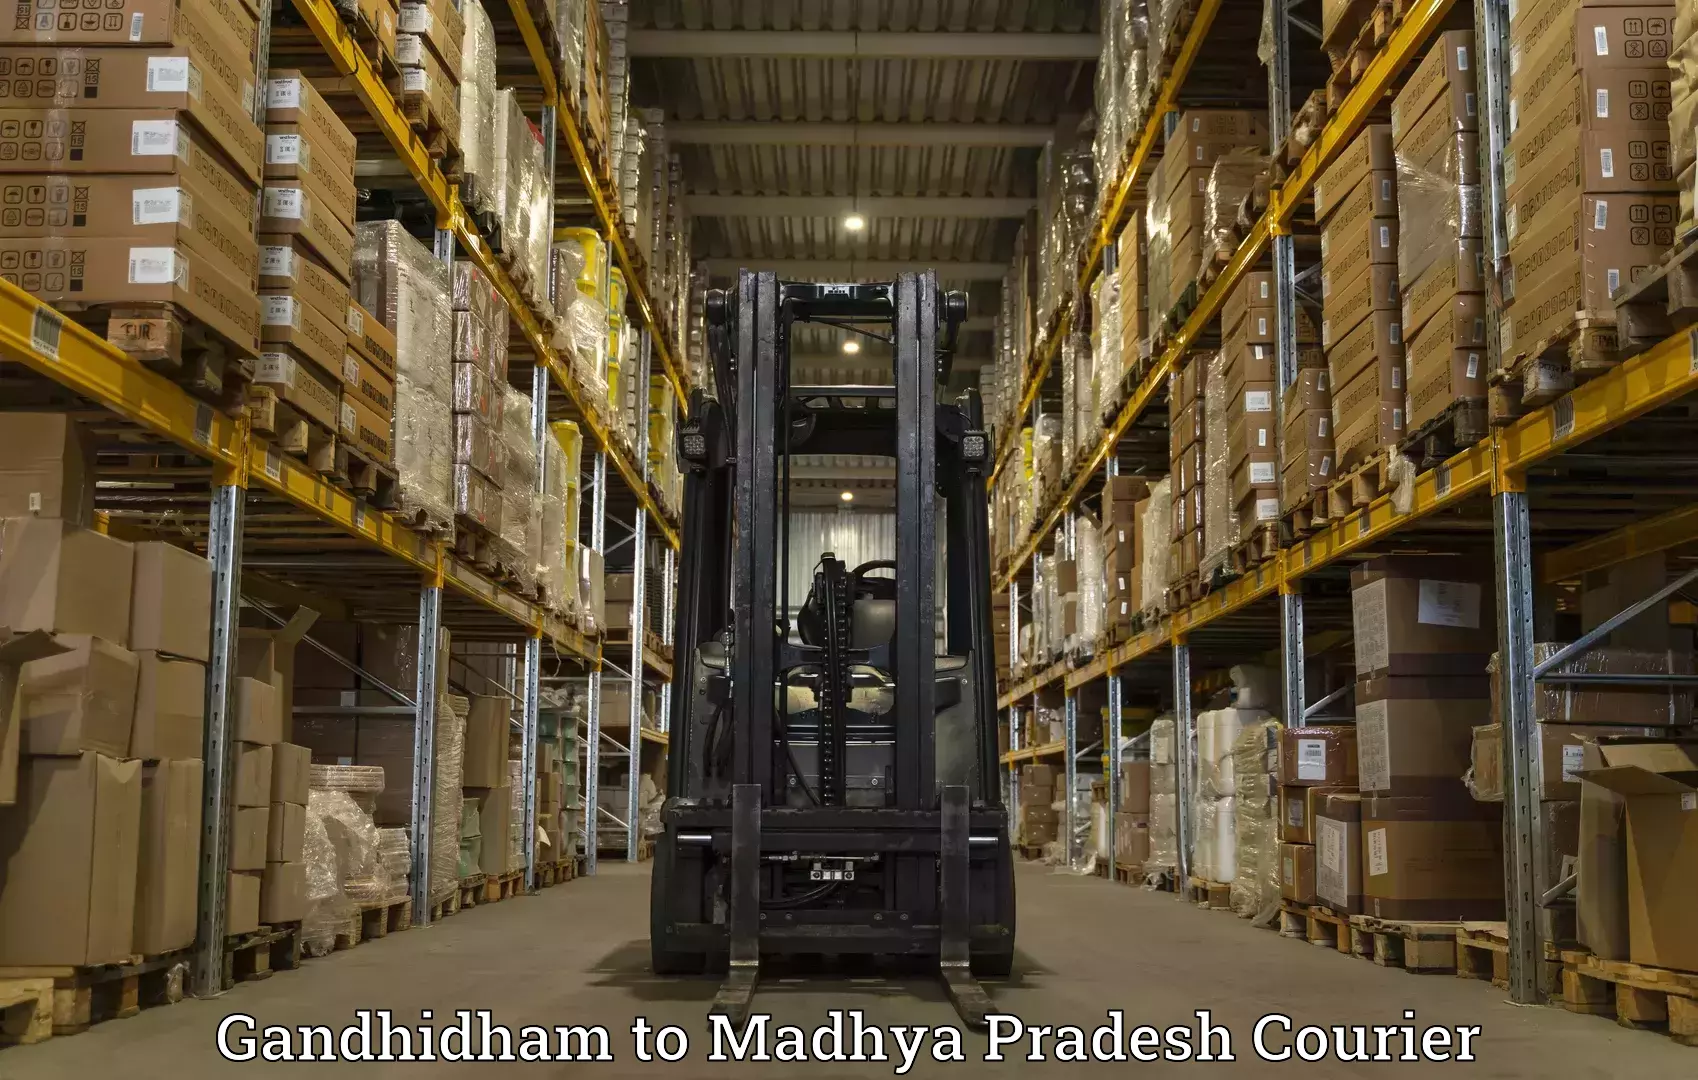 Express courier capabilities Gandhidham to Vijayraghavgarh